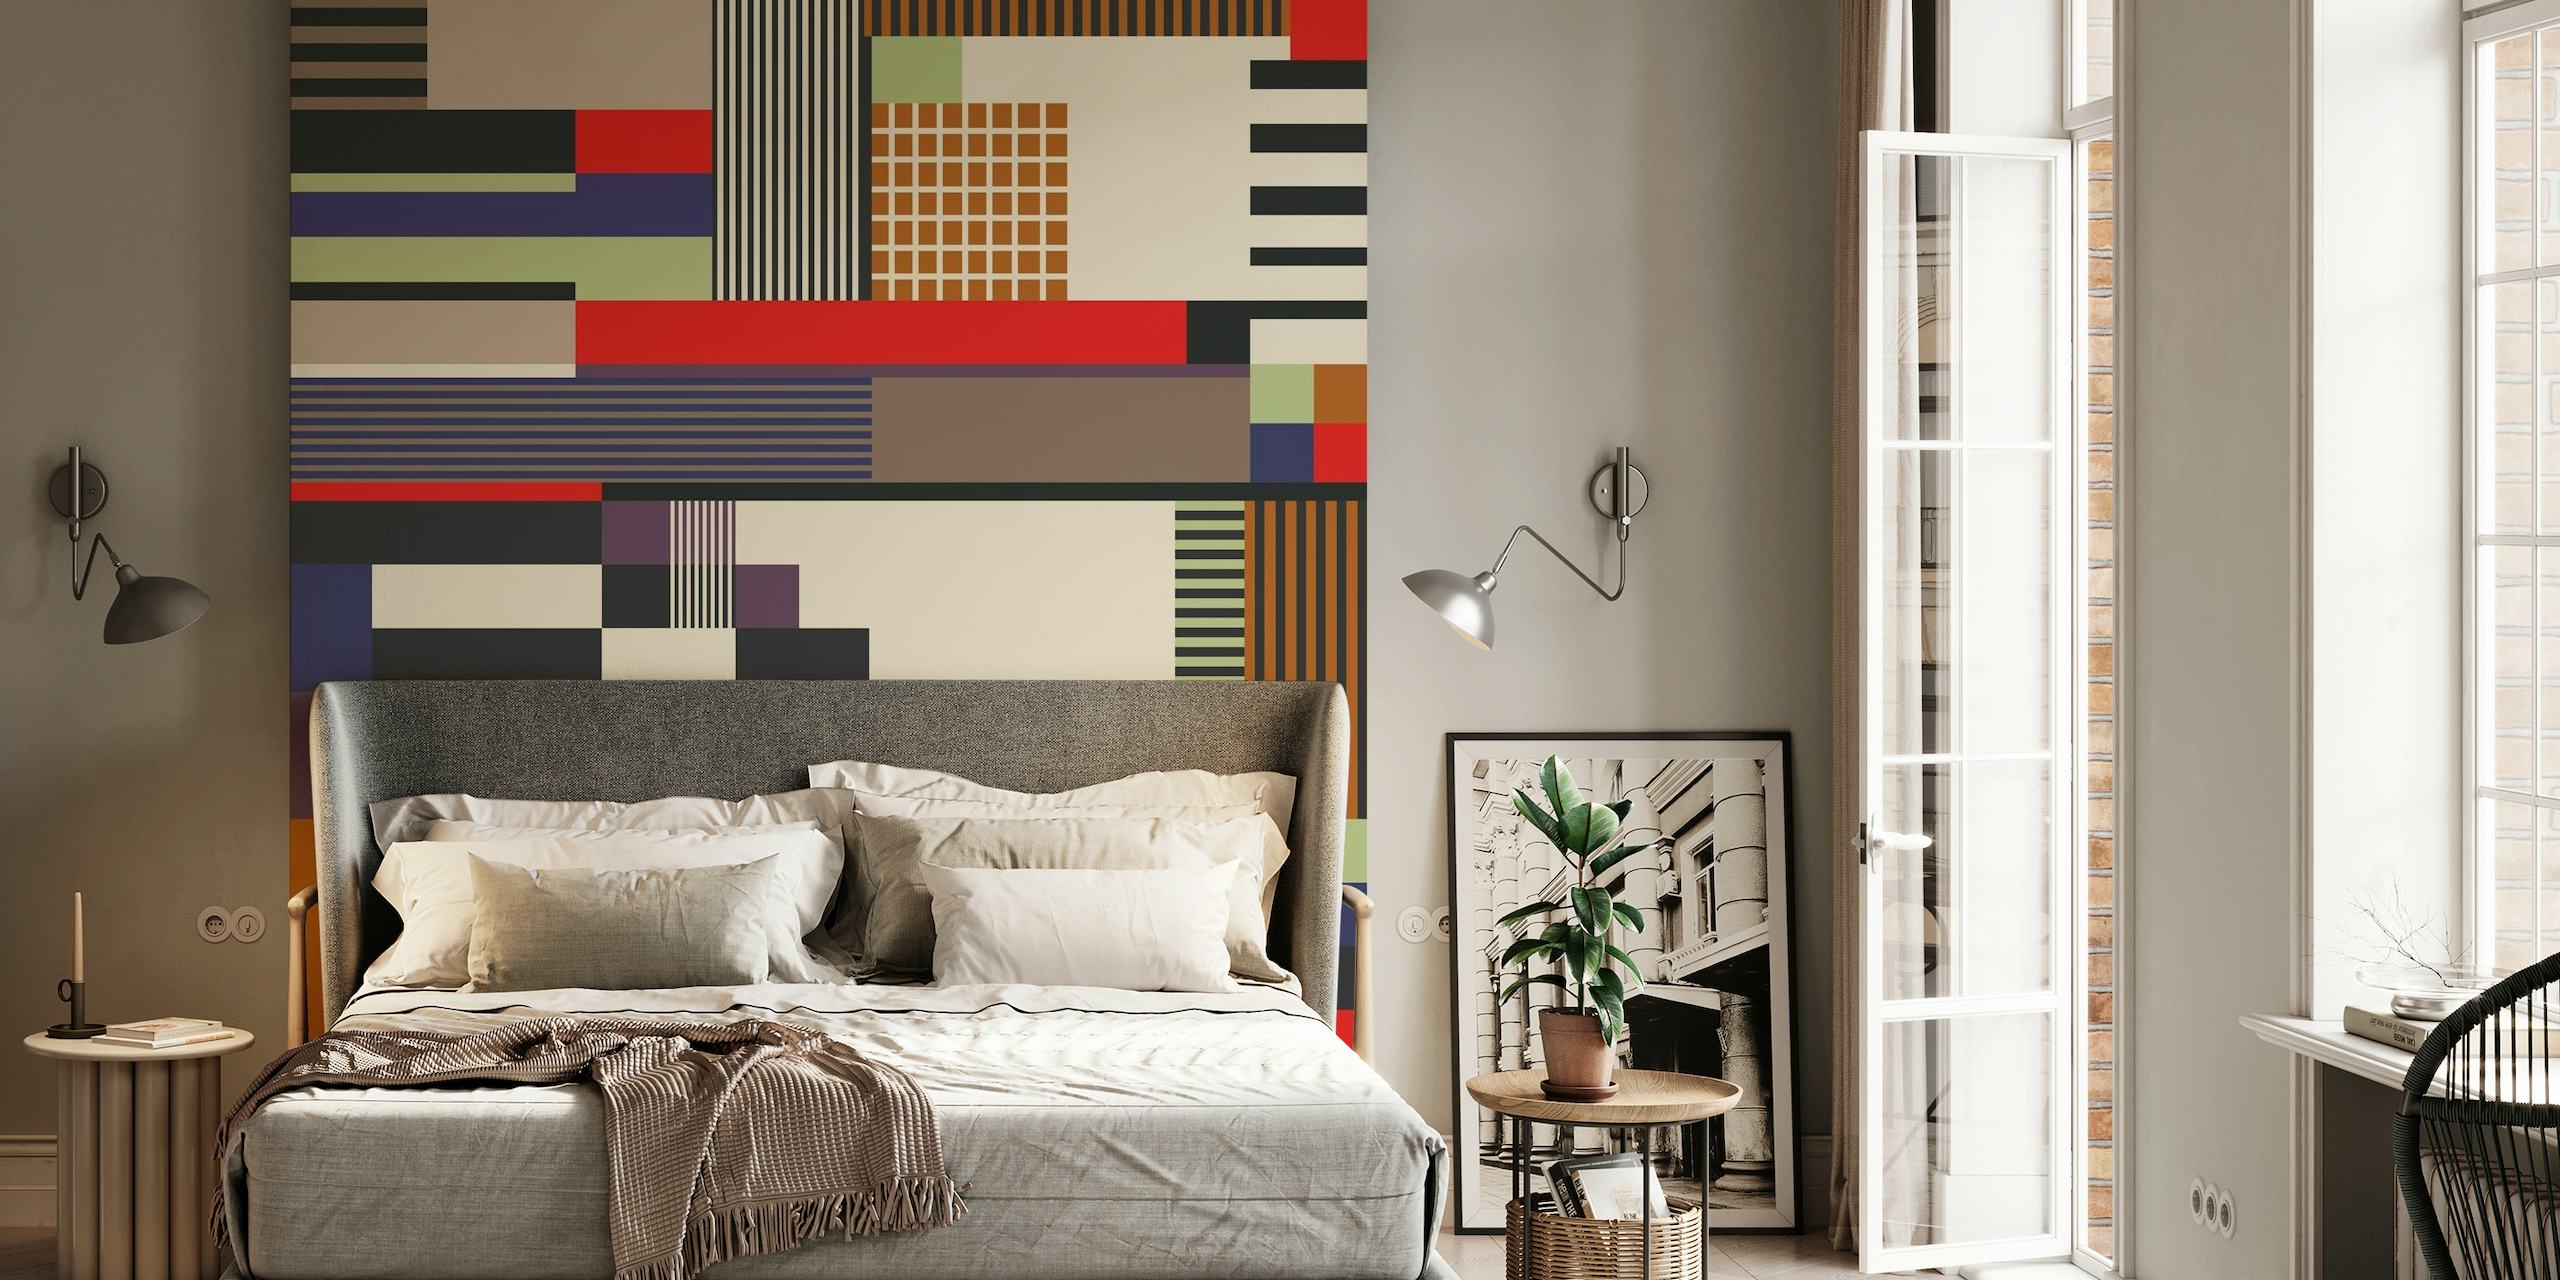 Muurschildering met abstract geometrisch patroon met een mix van rechthoeken en lijnen in verschillende kleuren